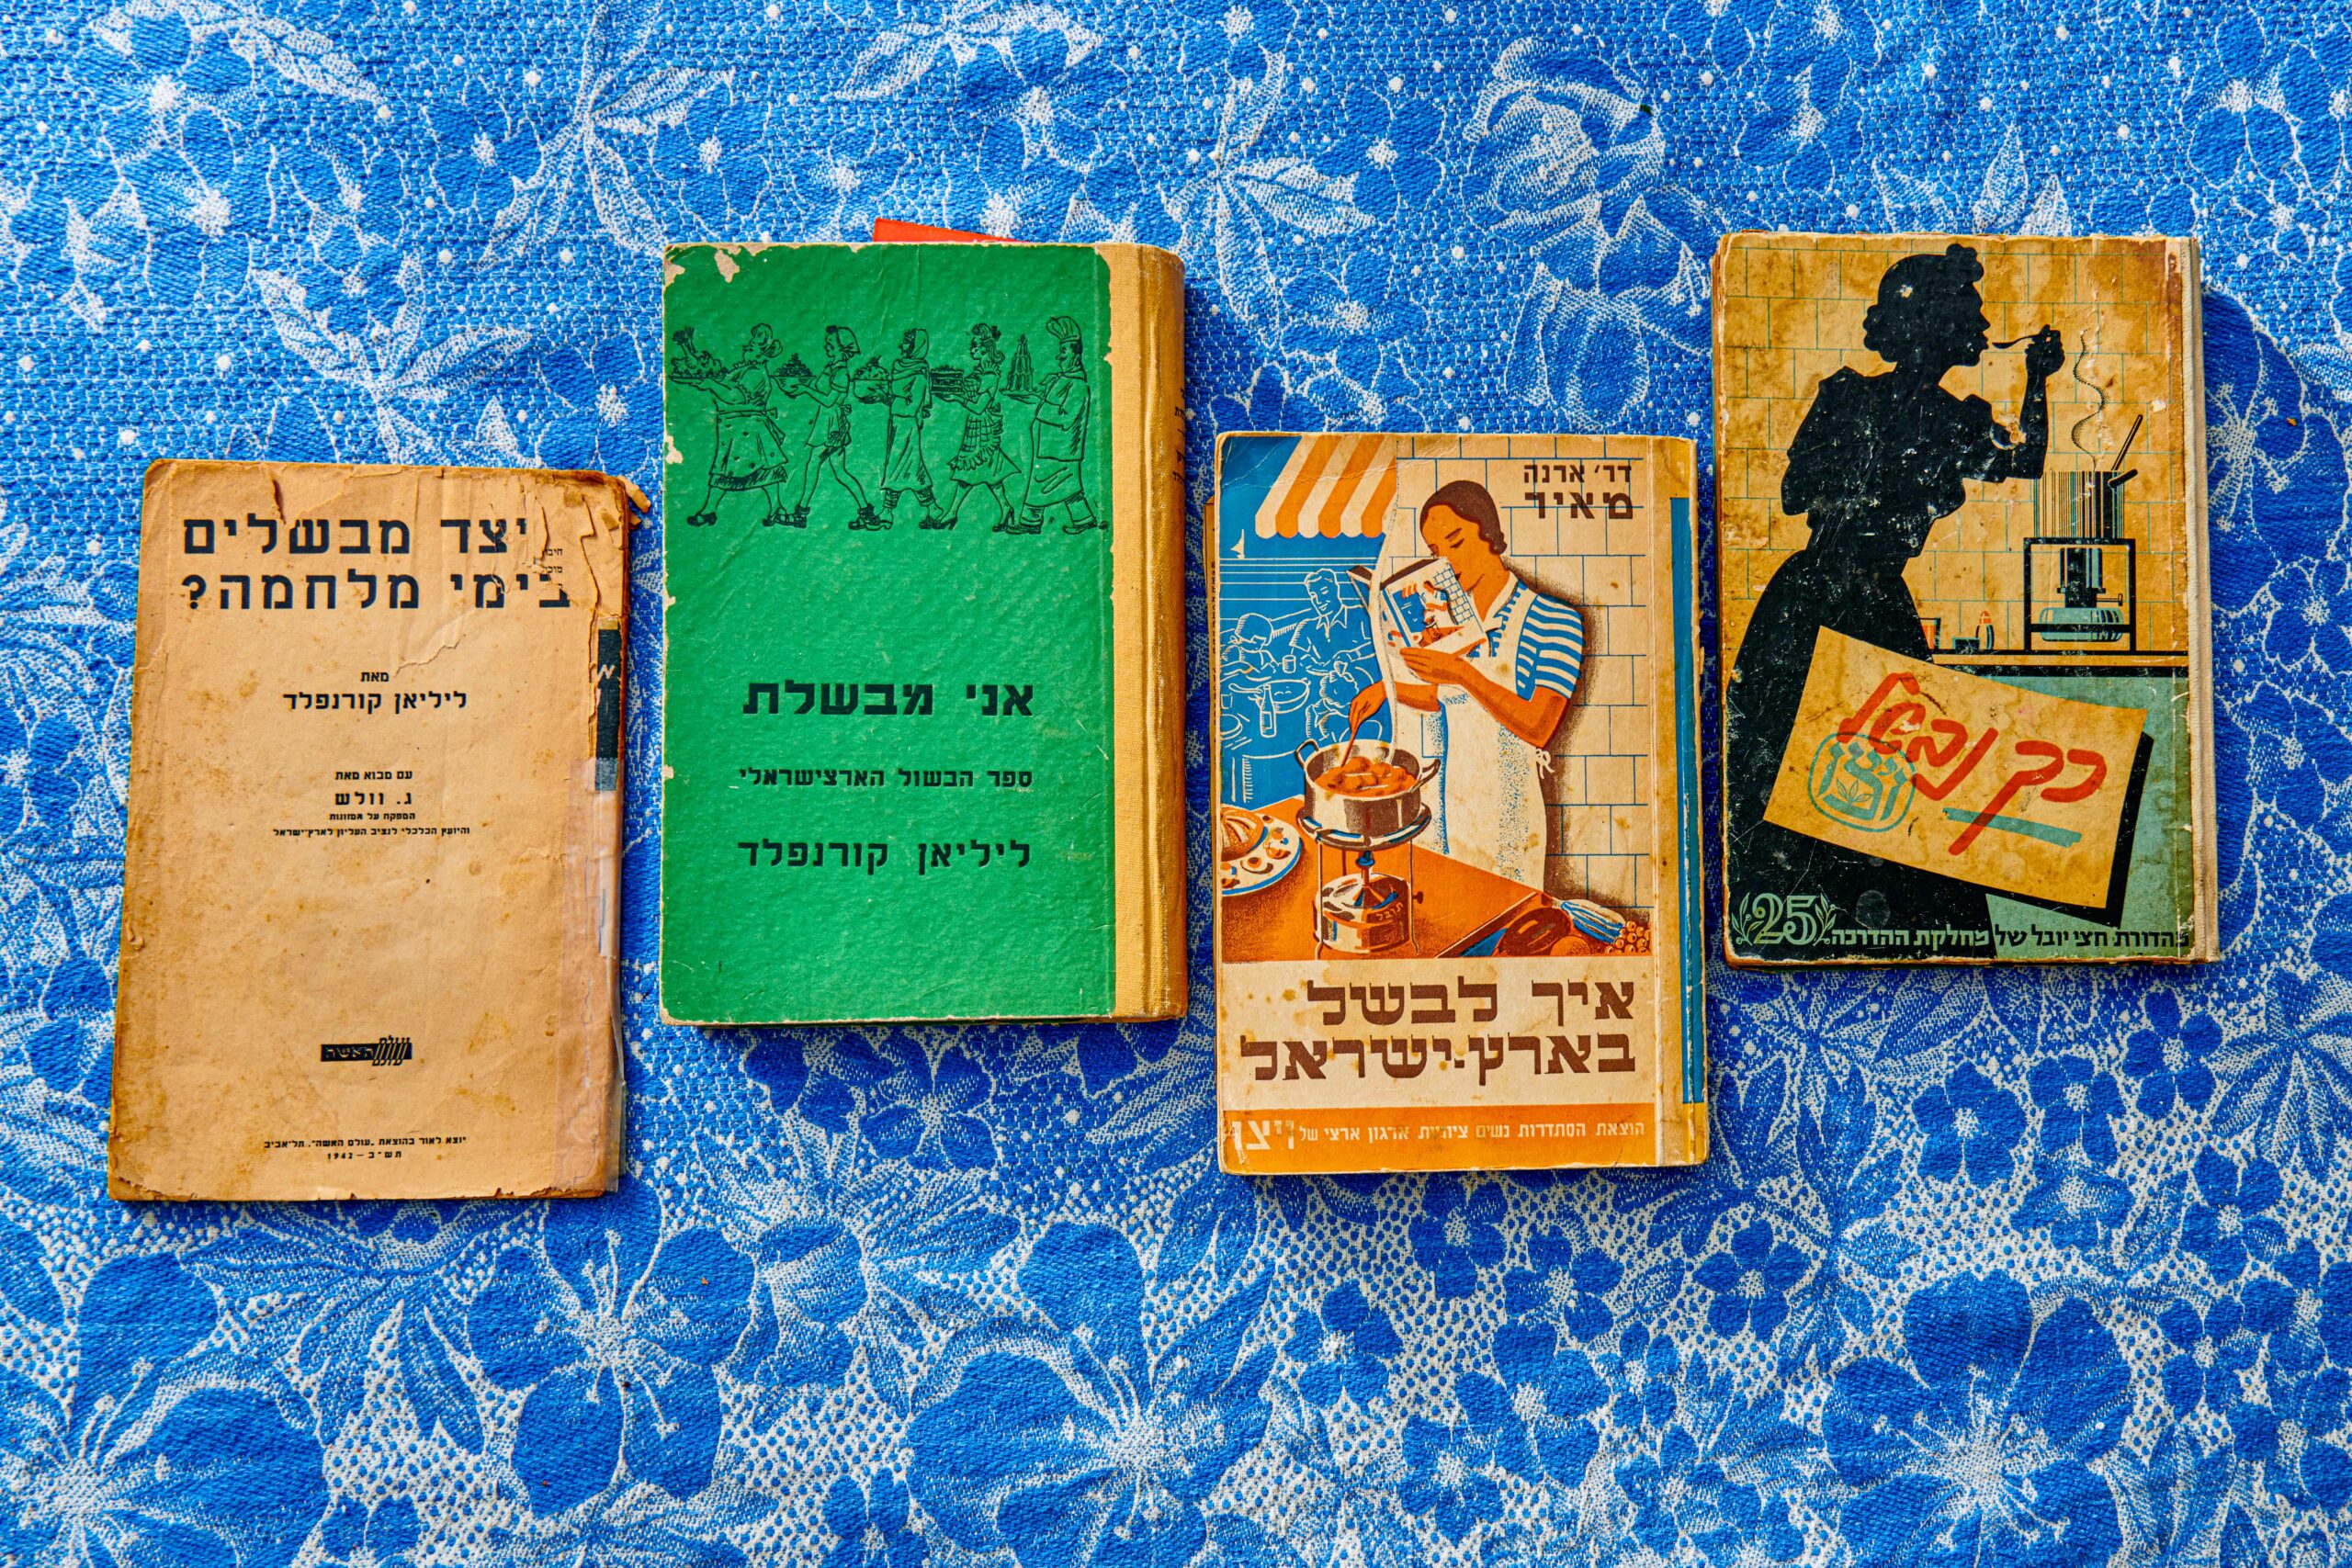 Vintage Hebrew cookbooks on blue floral tablecloth